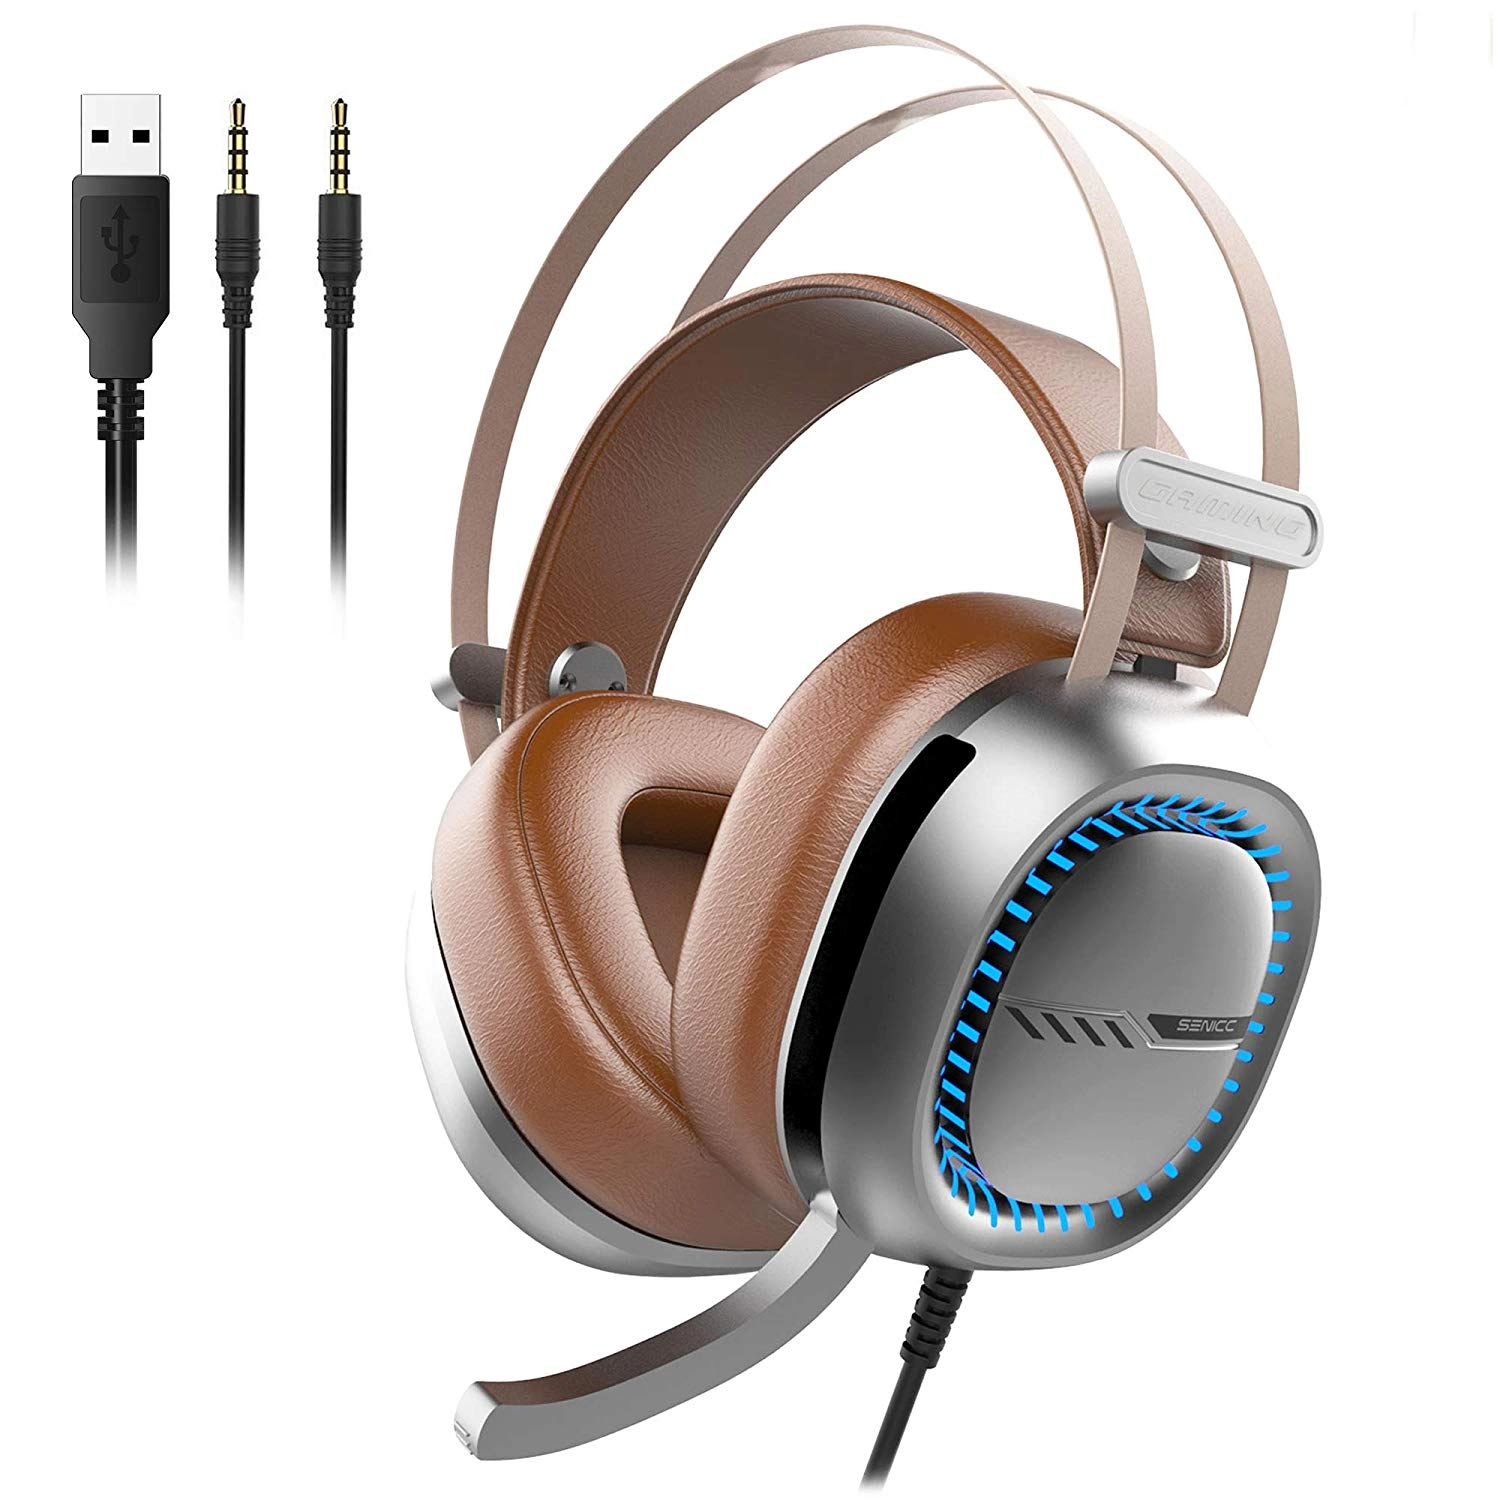 Somic W245 stereofoniczny zestaw słuchawkowy do gier 40 mm głośnik 3,5 mm + wtyczka USB duża nausznik ze światłem LED OEM / ODM